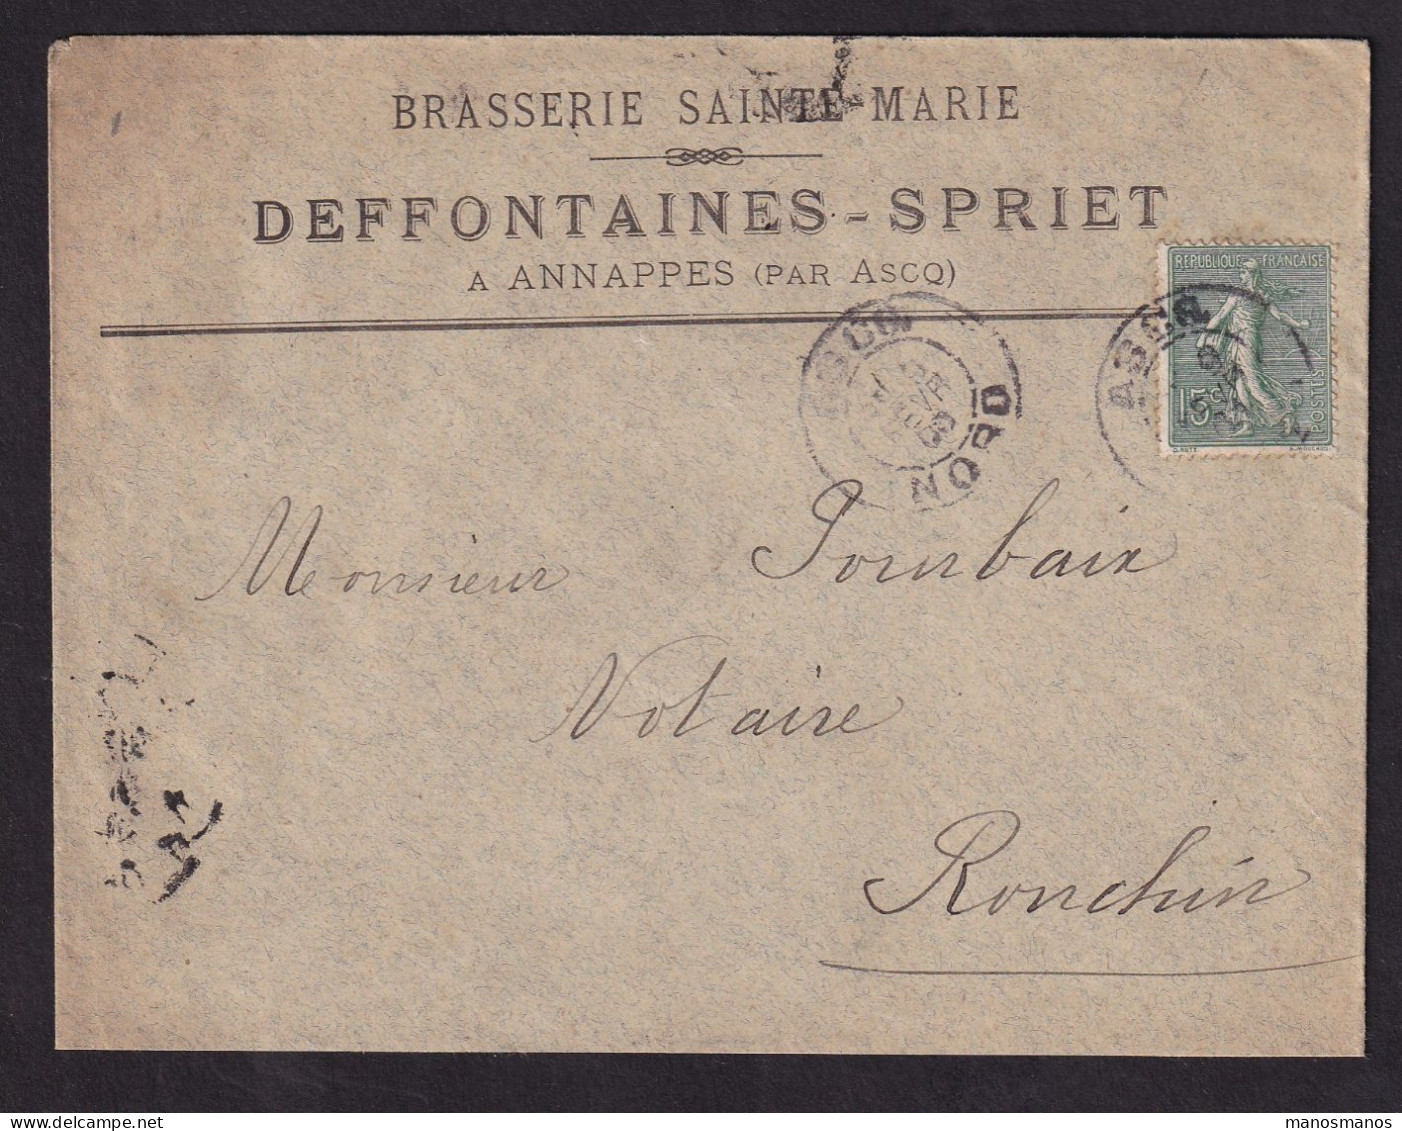 DDDD 928 -- BRASSERIES FRANCE - Enveloppe TP Semeuse ANNAPPES Par ASCQ (Nord) 1908 - Brasserie Sainte-Marie DEFFONTAINES - Biere